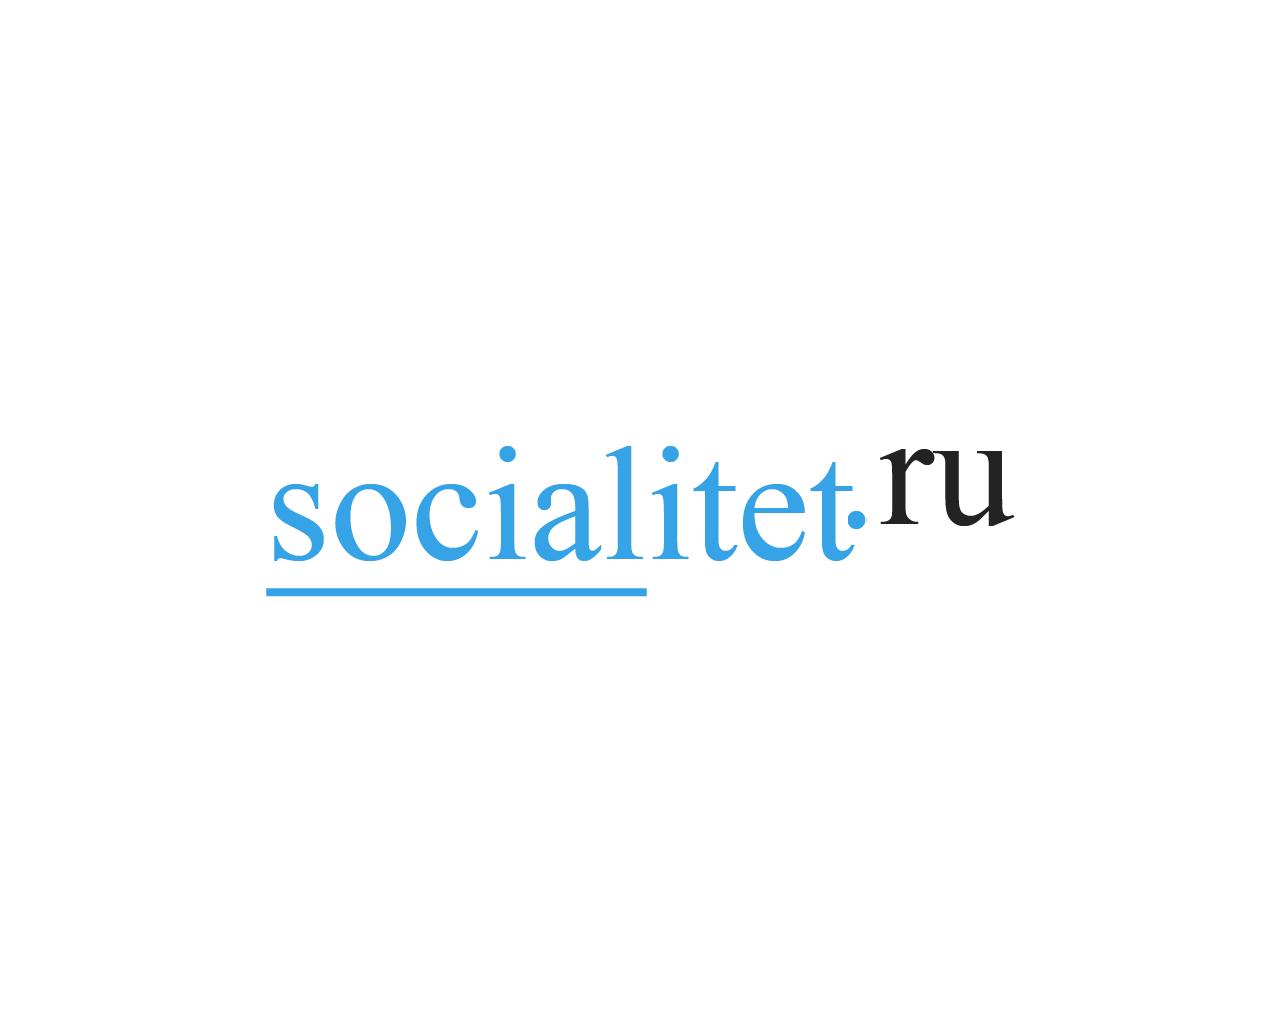 Изображение сайта socialitet.ru в разрешении 1280x1024